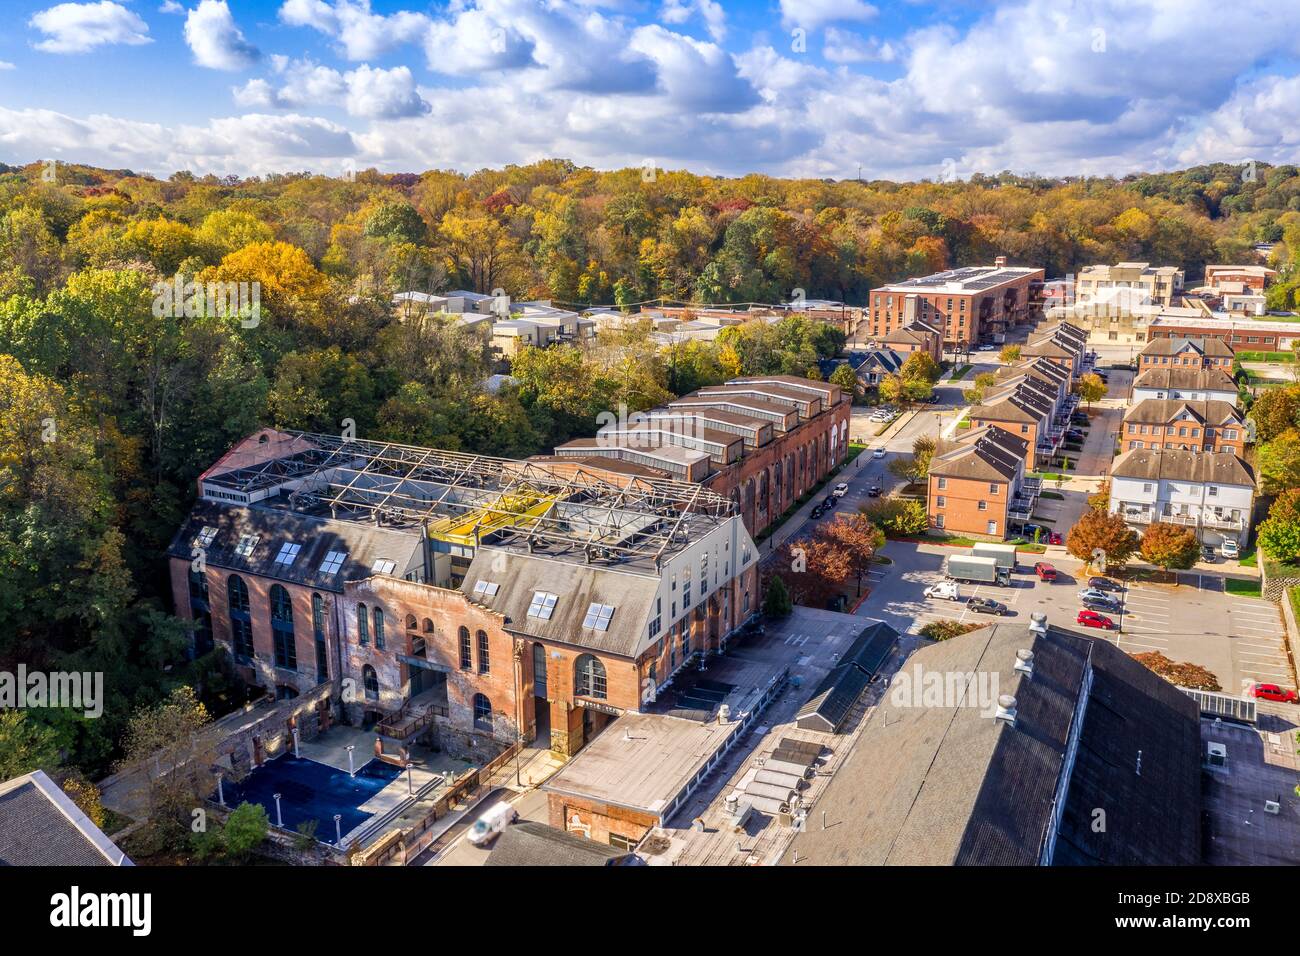 Vue aérienne de la rue du quartier de Woodberry, à Baltimore Maryland avec maisons en briques Banque D'Images